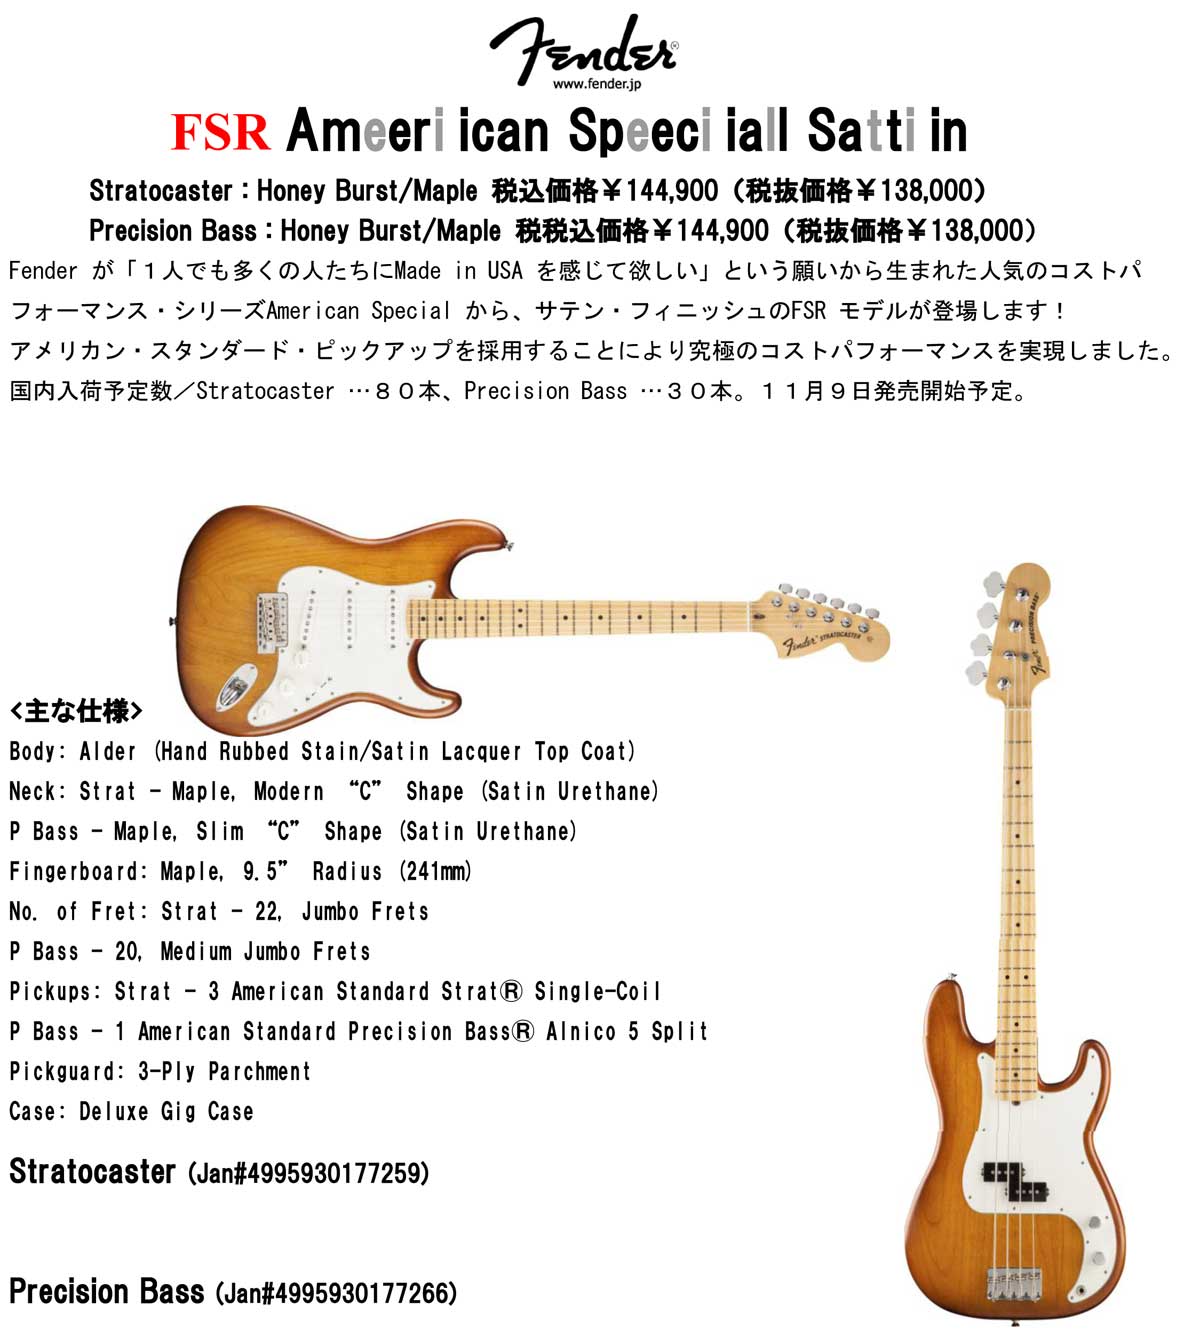 FENDER FSR American Special Satin